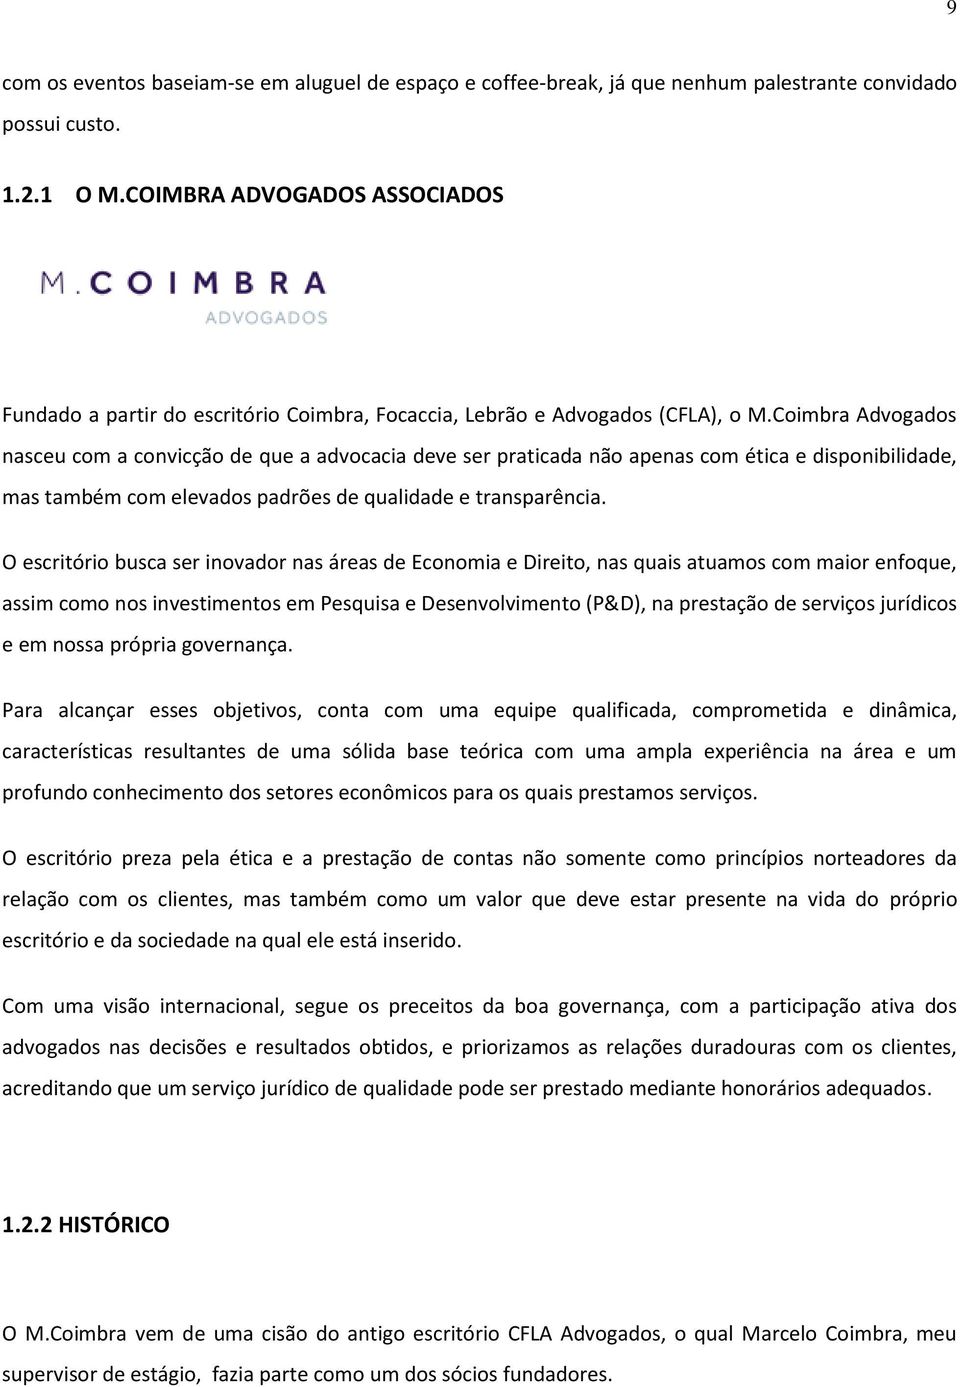 Coimbra Advogados nasceu com a convicção de que a advocacia deve ser praticada não apenas com ética e disponibilidade, mas também com elevados padrões de qualidade e transparência.